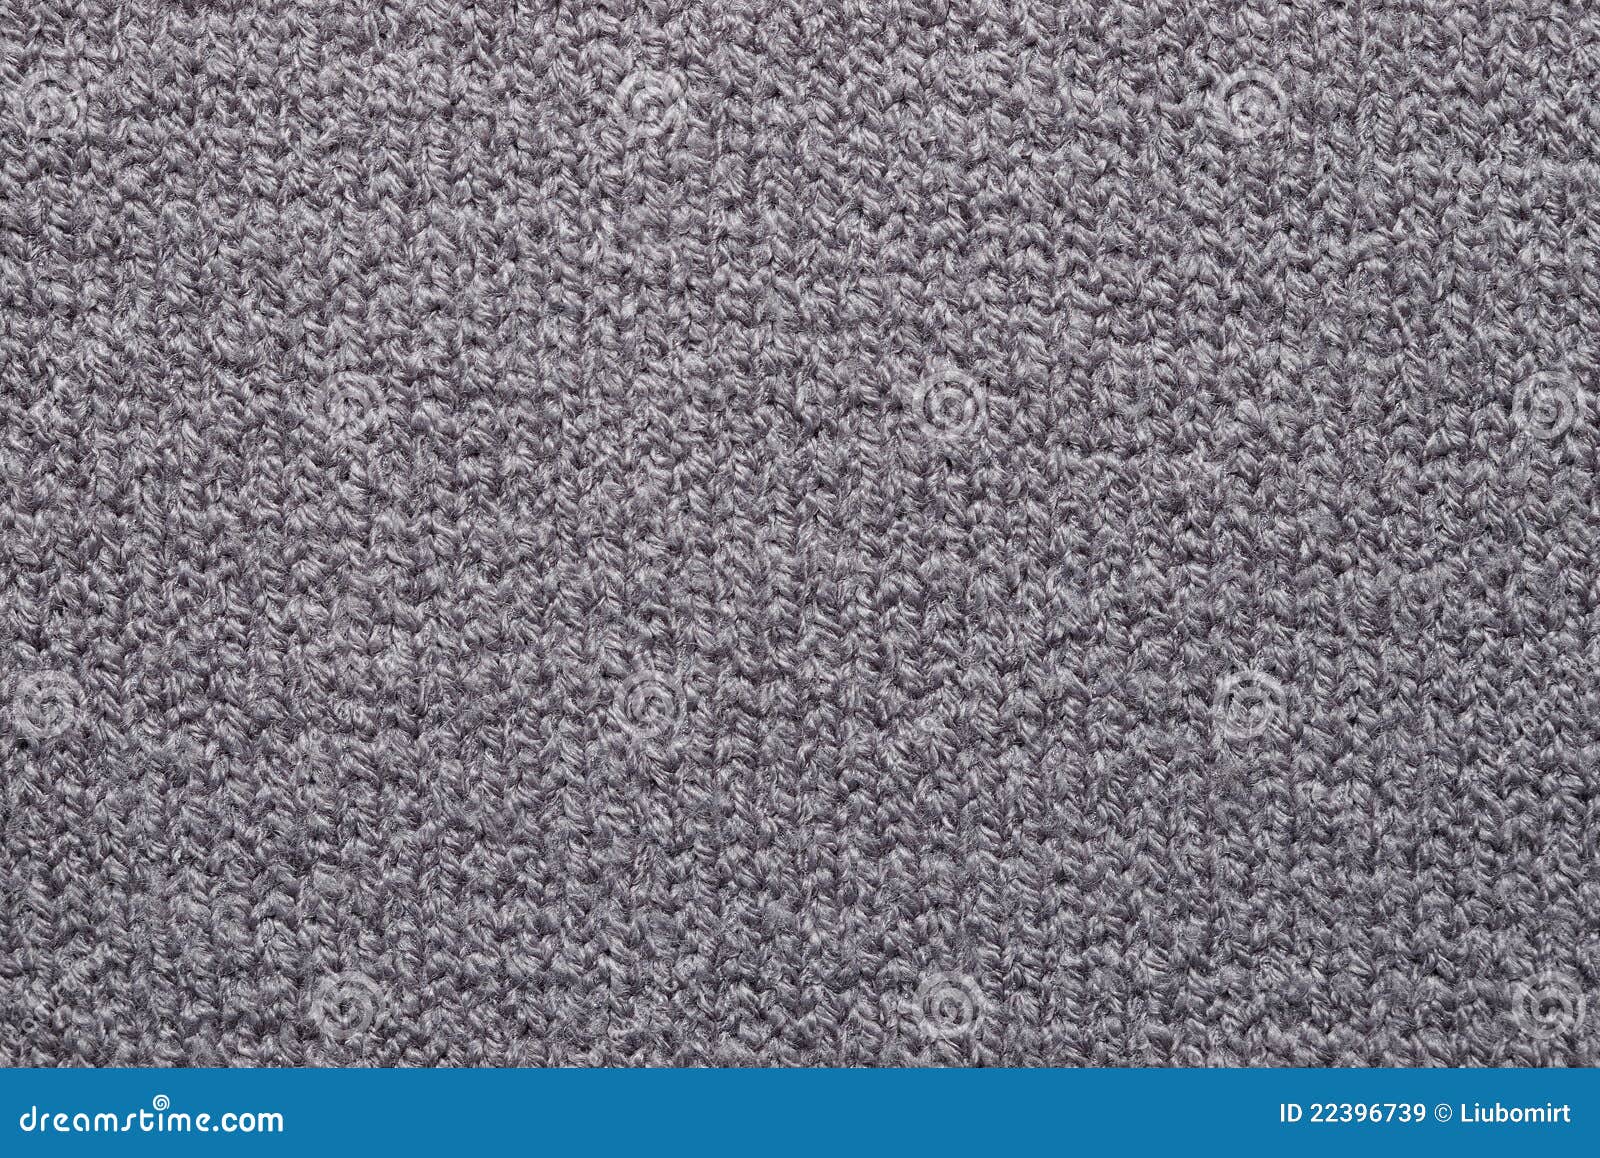 760,260 Seamless Grey Fabric Texture Images, Stock Photos, 3D